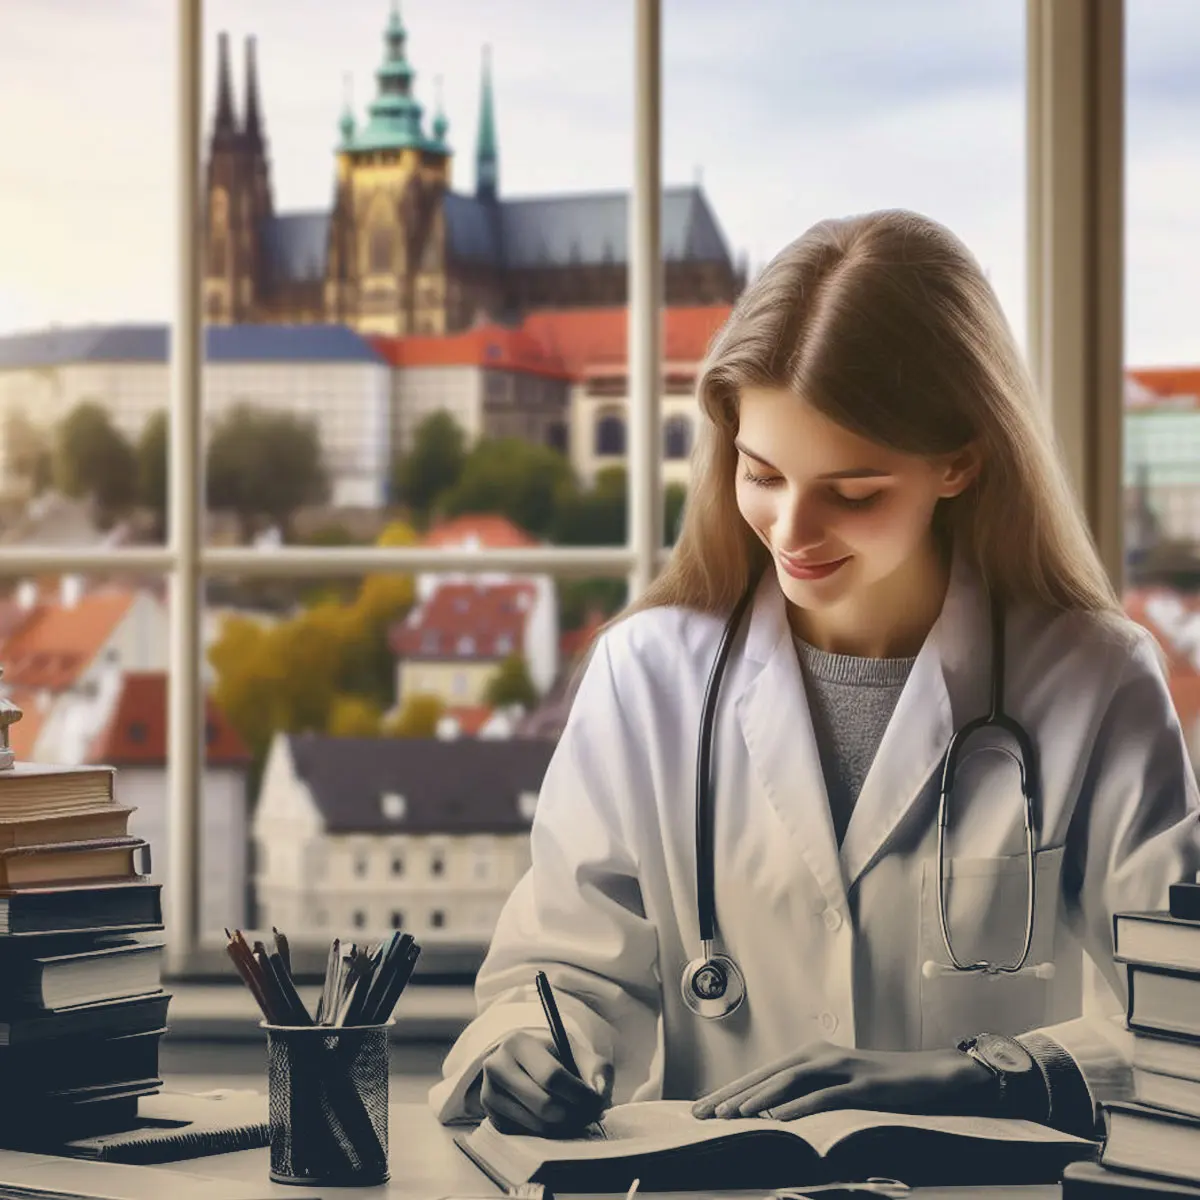 تحصیل پزشکی و دندانپزشکی در چک